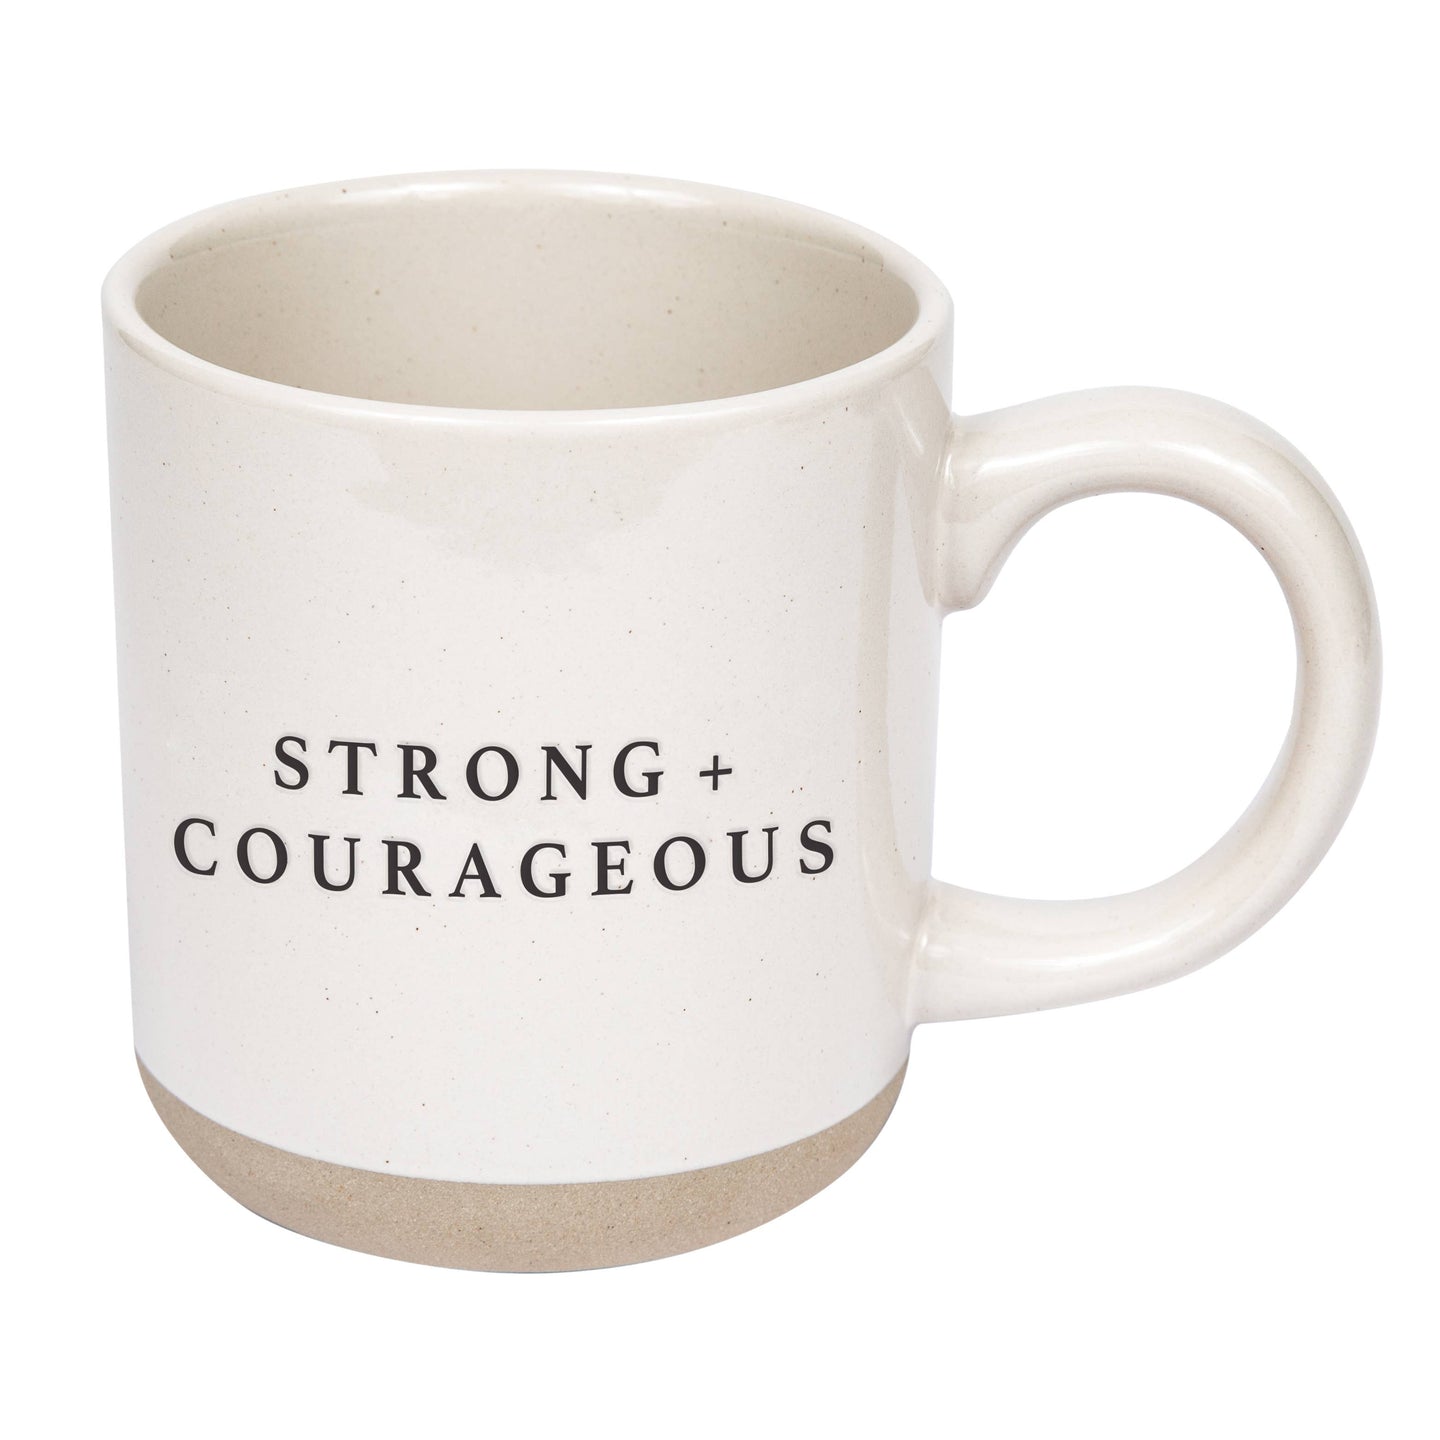 Strong + Courageous Coffee Mug - 14oz